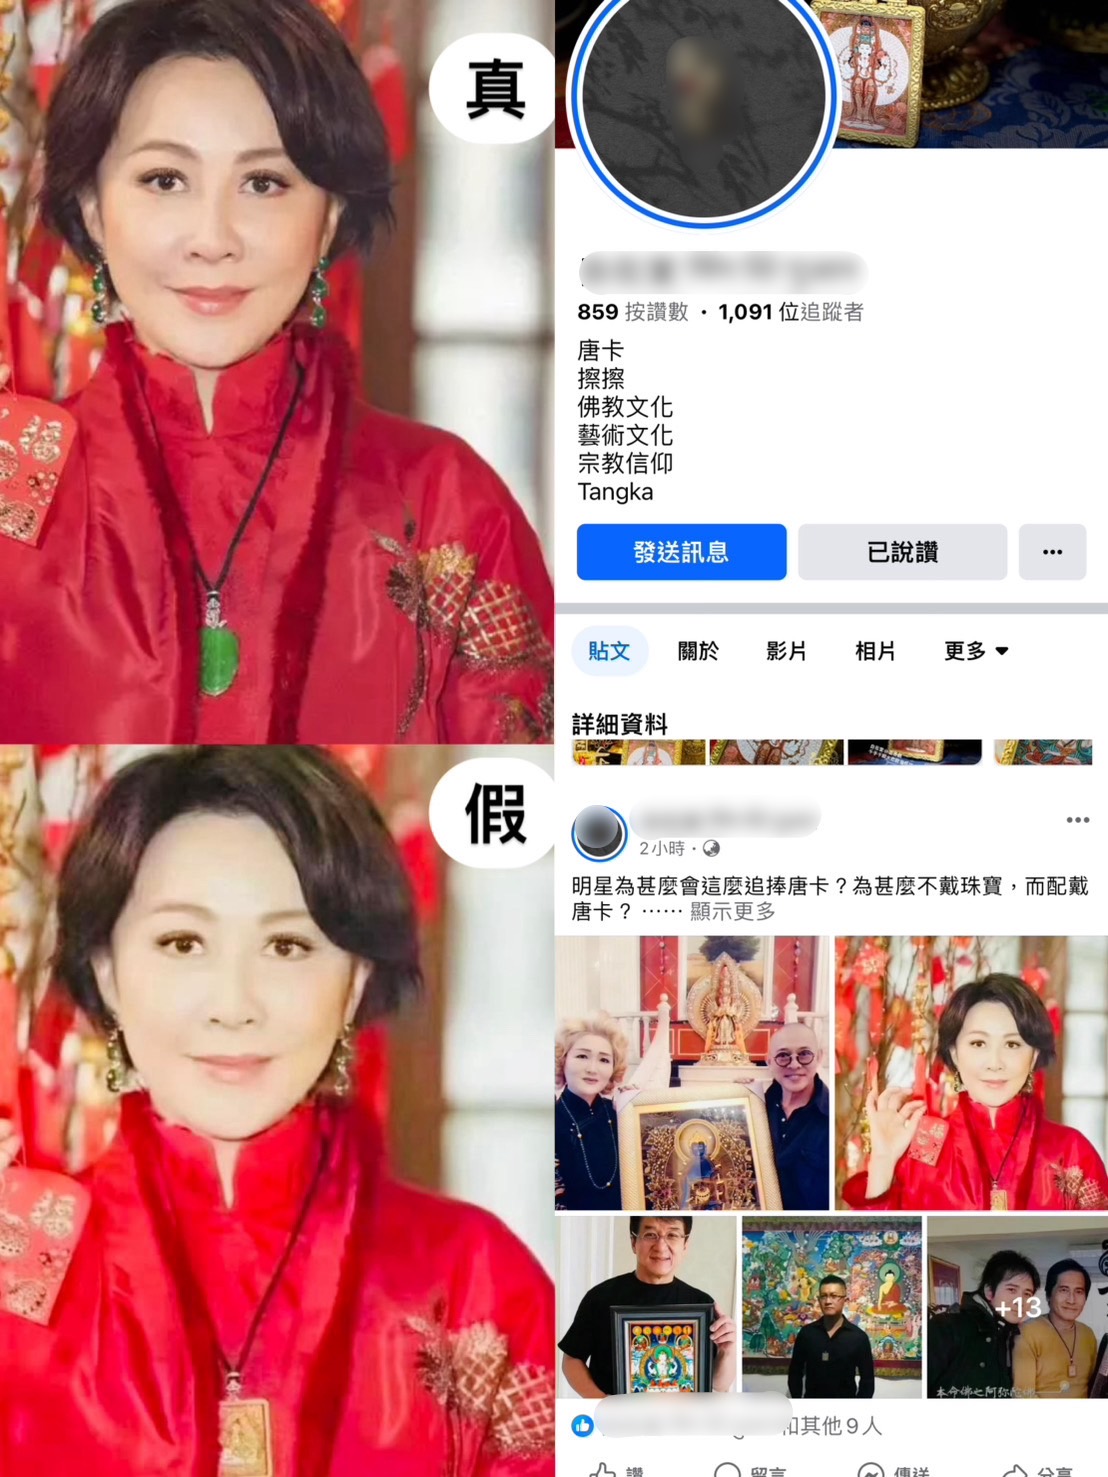 脸书出现网路拍卖广告盗用香港女艺人刘嘉玲照片，变造为佩挂佛像护身项链，有民众花7千元买手环发现做工粗糙，刑事局提醒严防深伪技术（Deepfake）诈欺。图／刑事局提供